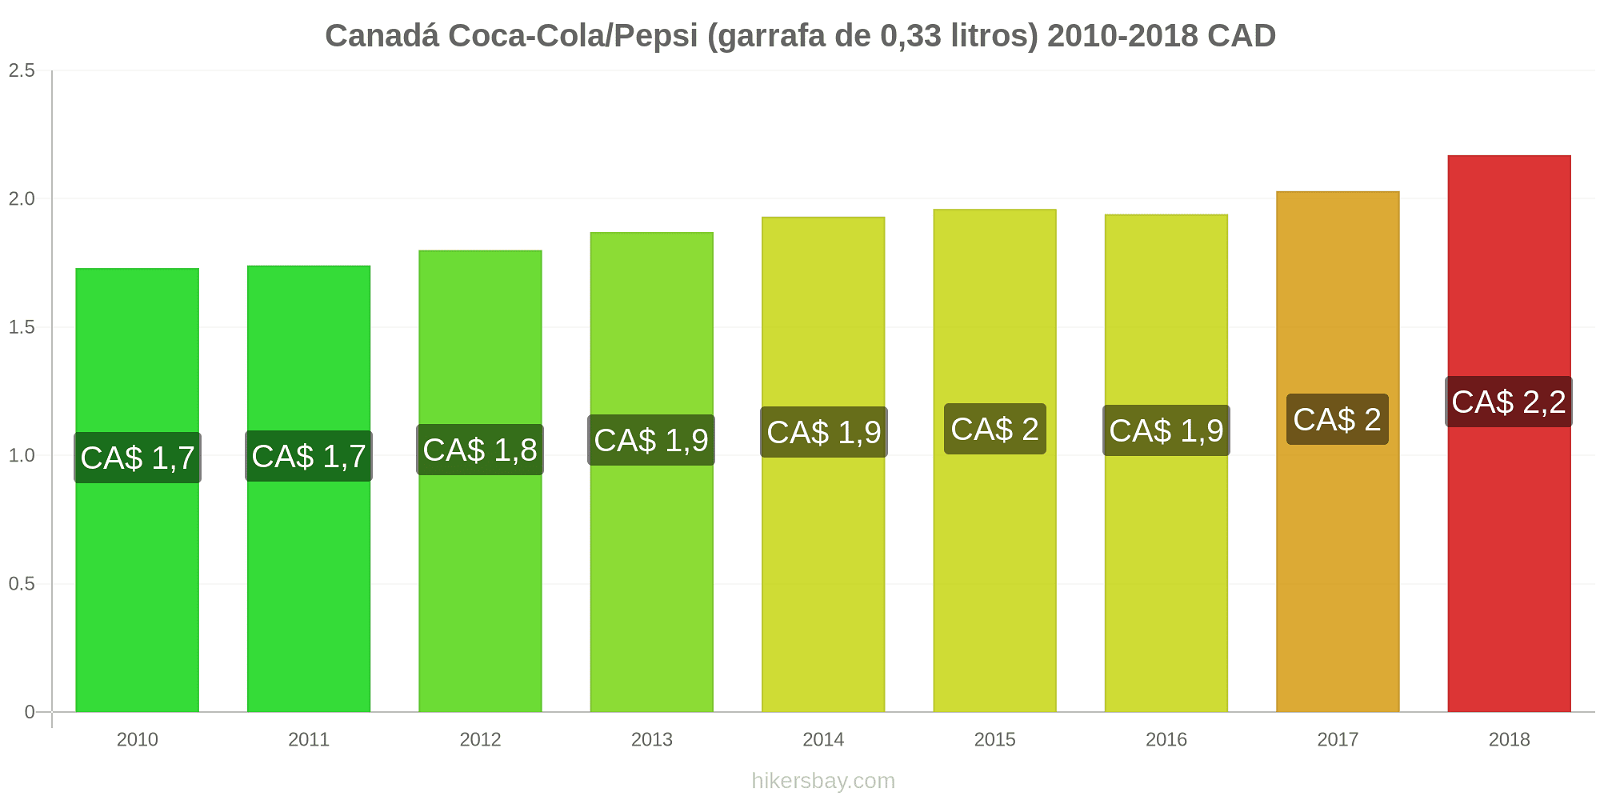 Canadá mudanças de preços Coca-Cola/Pepsi (garrafa de 0.33 litros) hikersbay.com